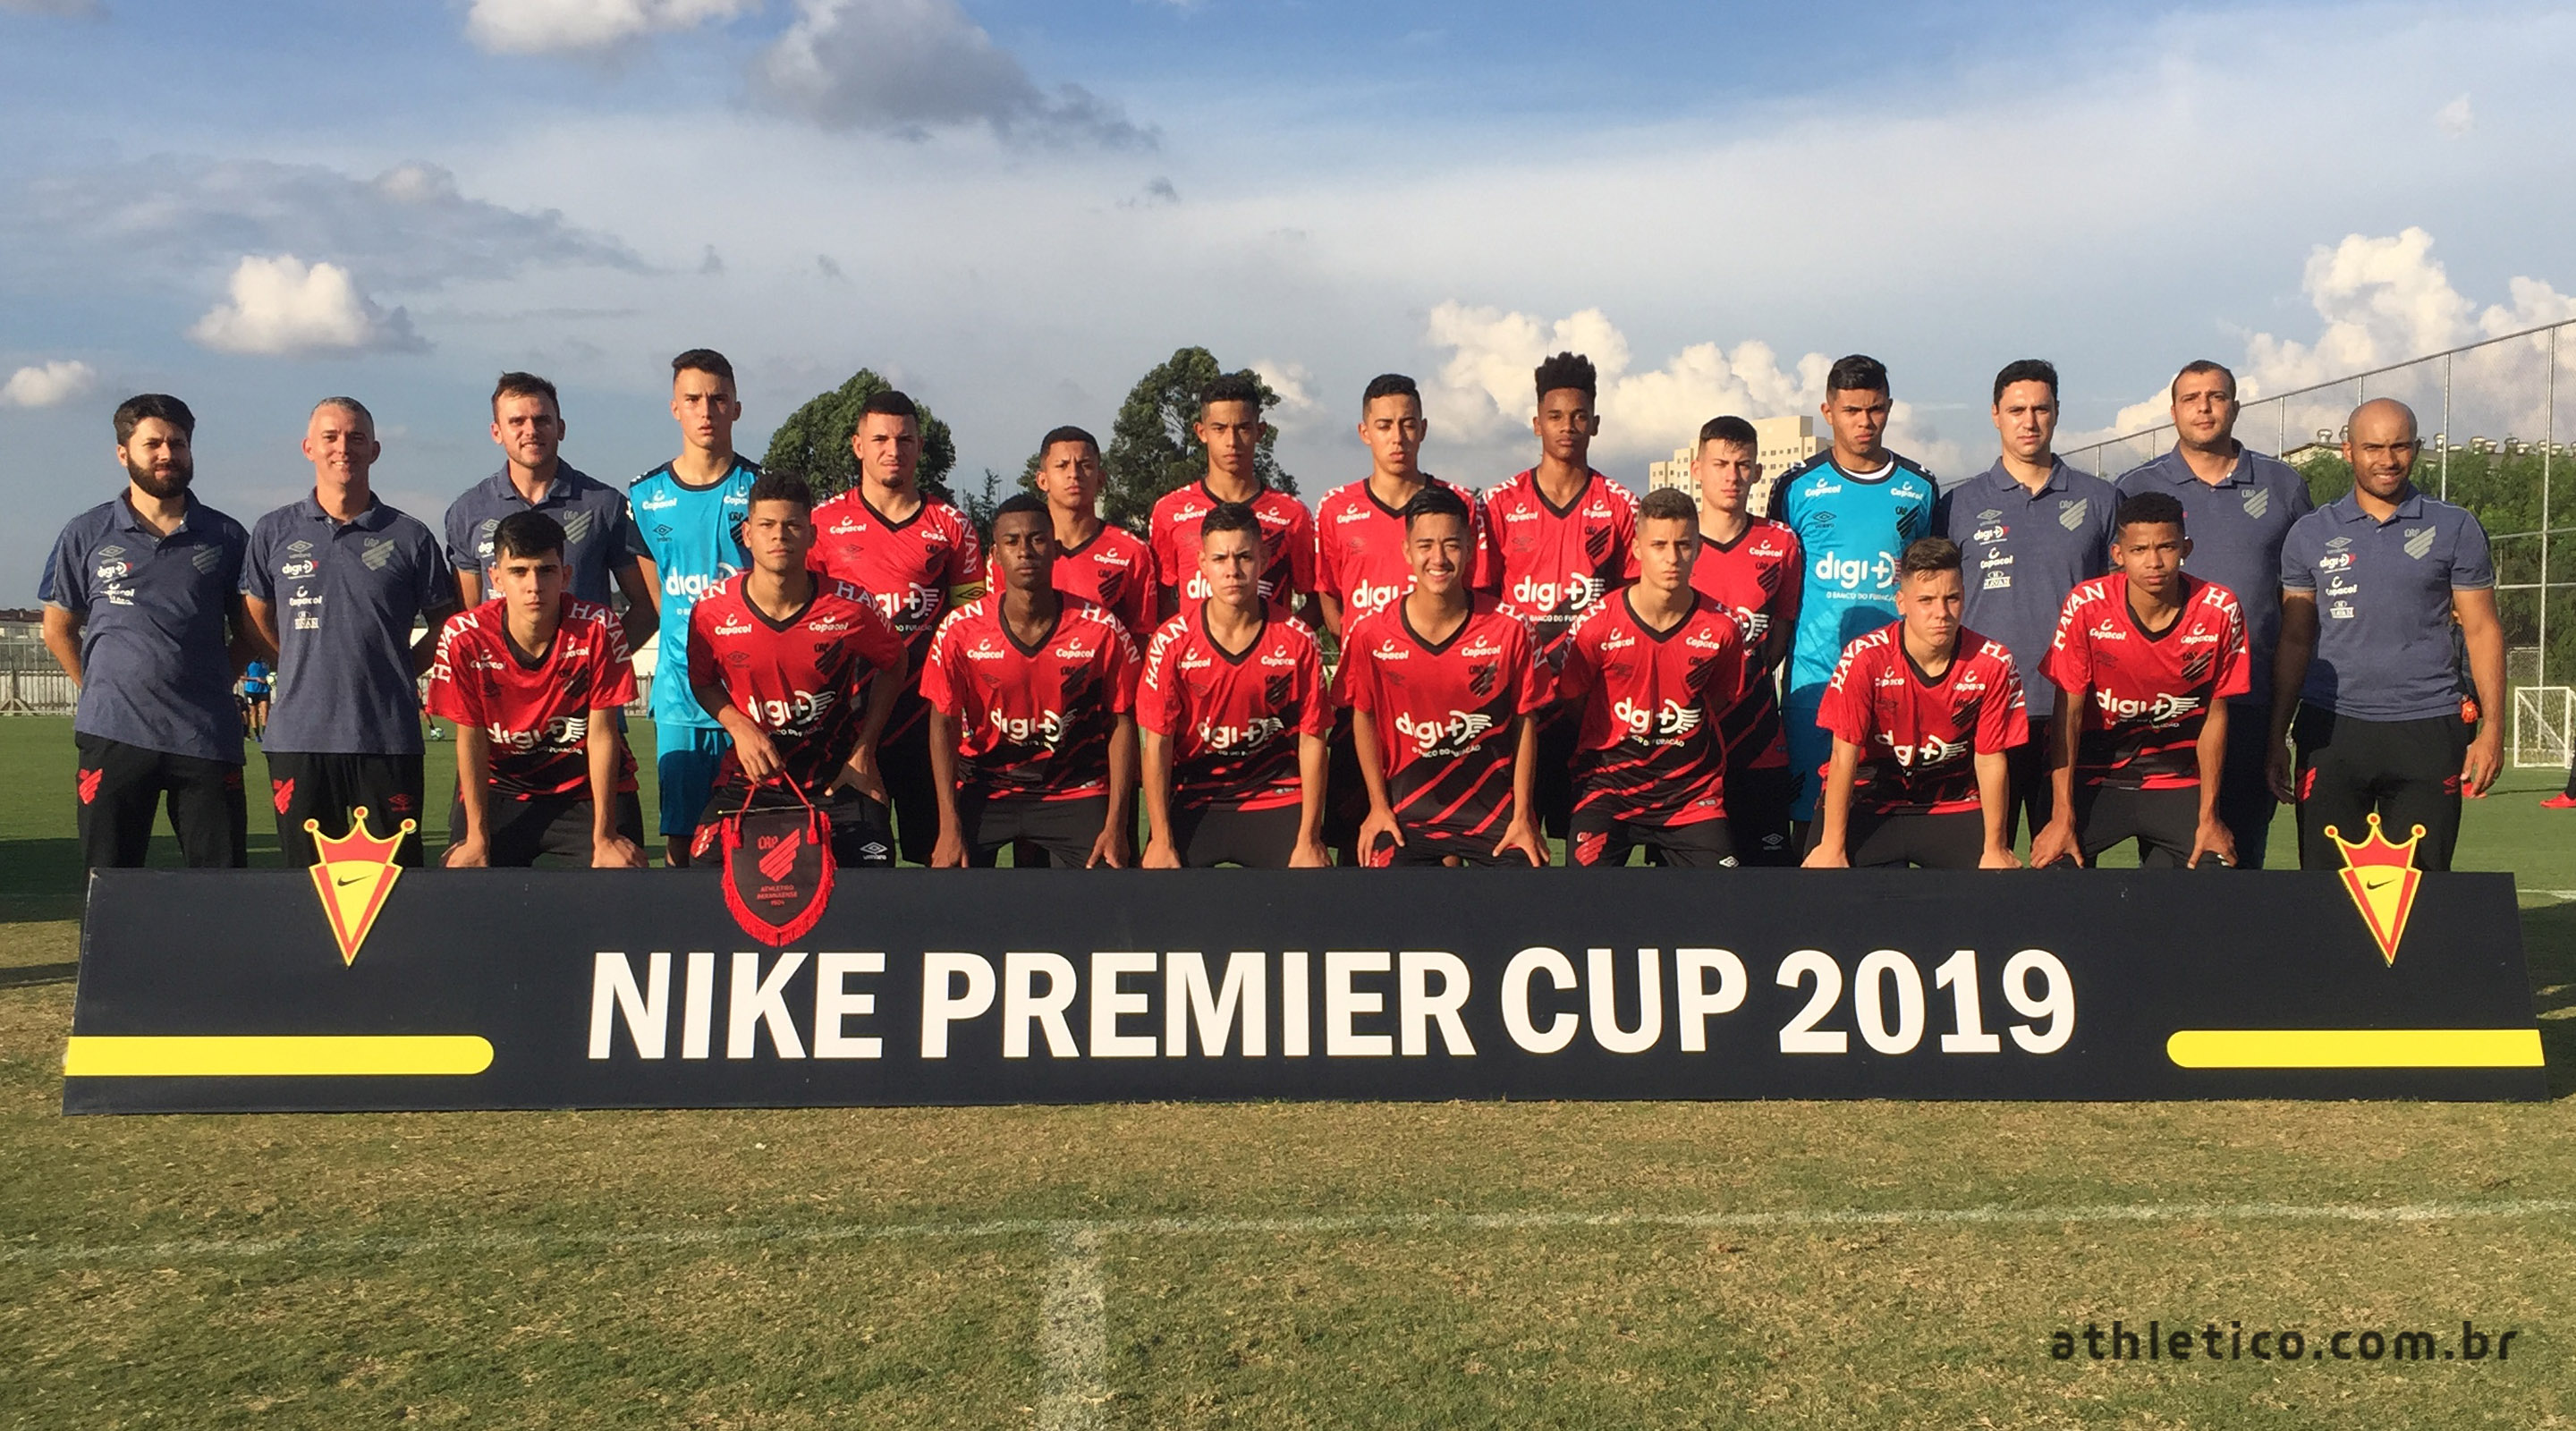 nike premier cup 2019